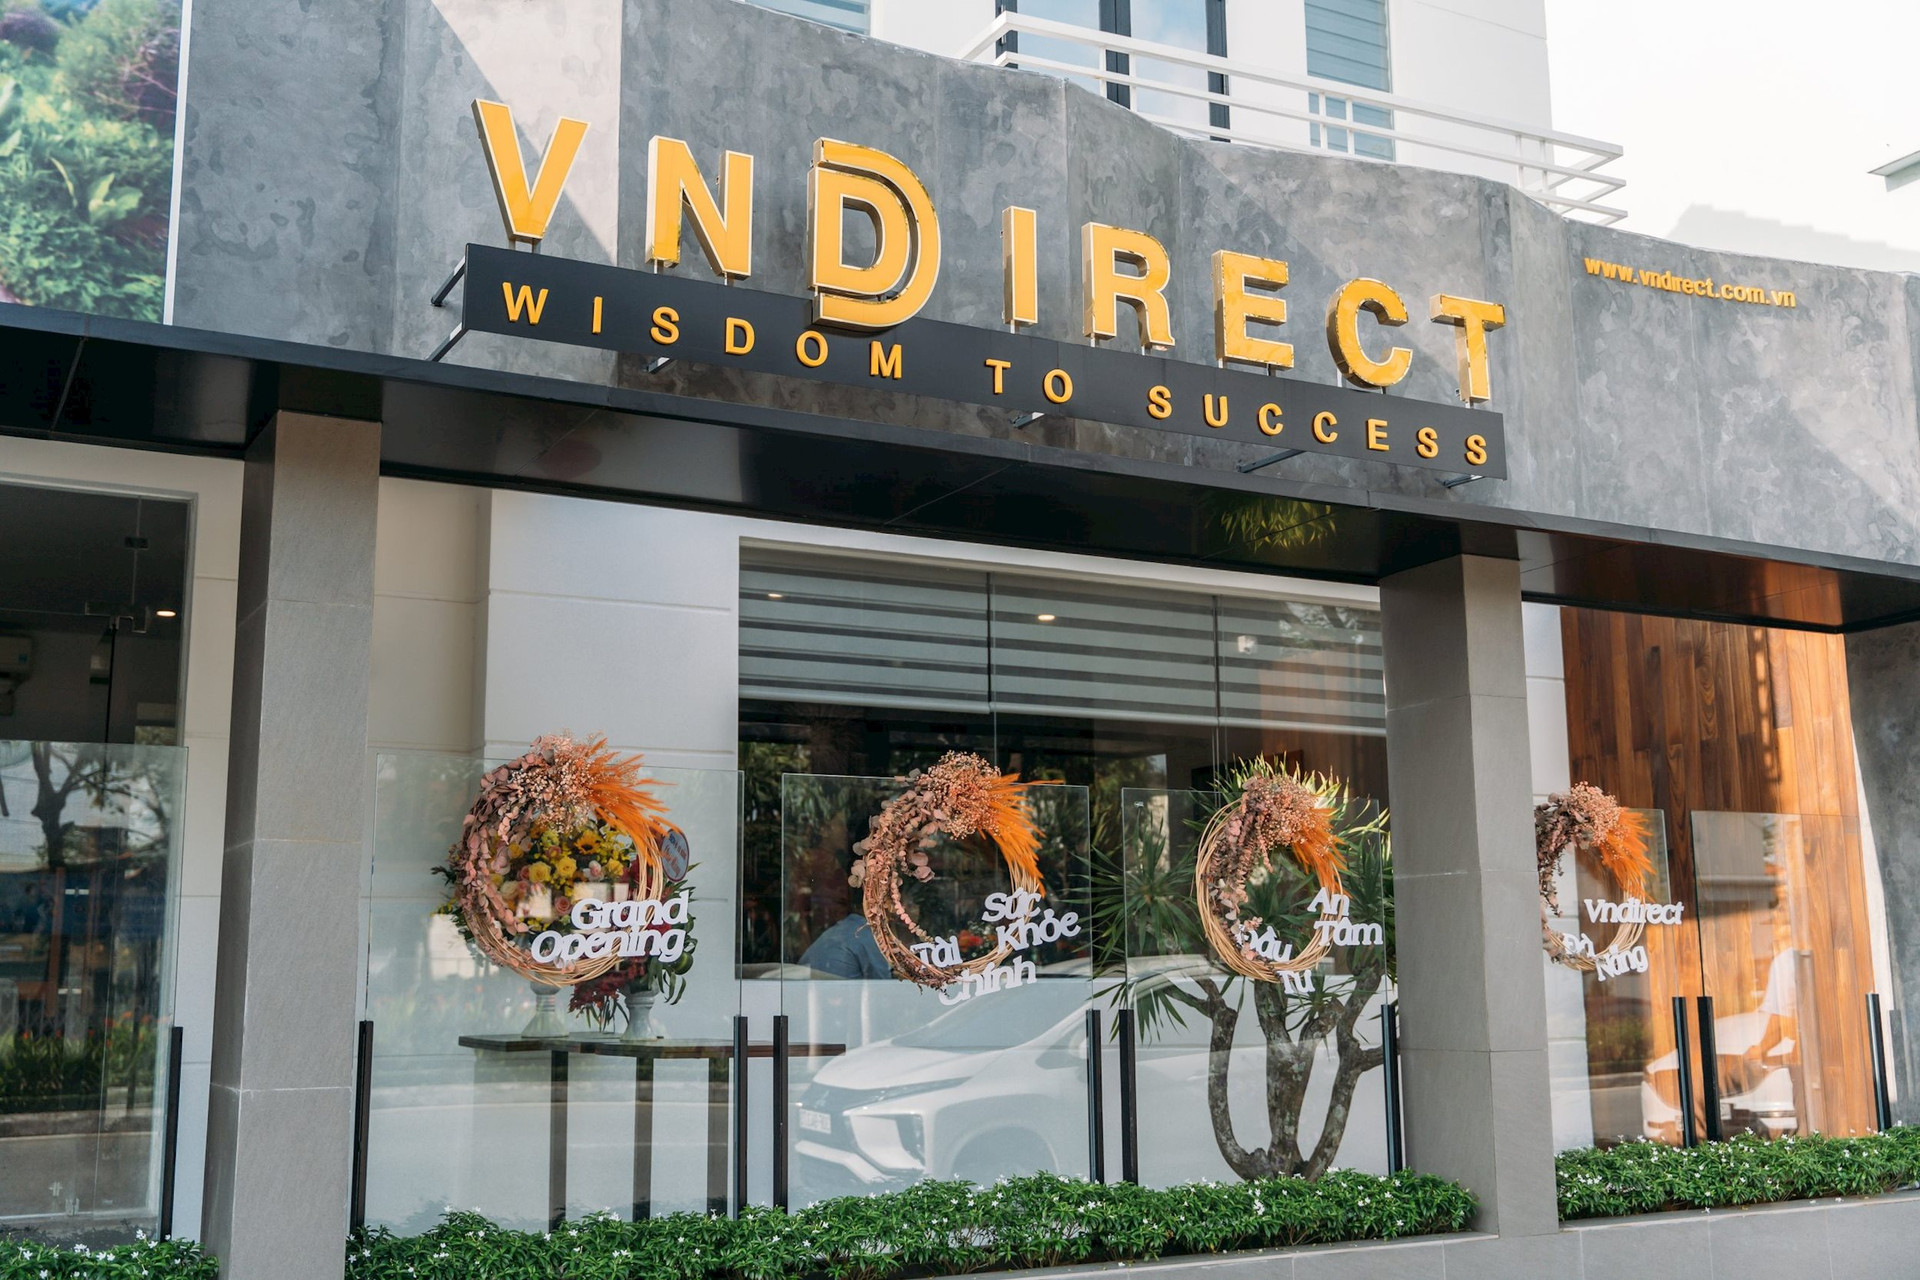 1 trong 4 người đại diện theo pháp luật của chứng khoán VNDirect đã bán sạch cổ phiếu VND - Ảnh 1.